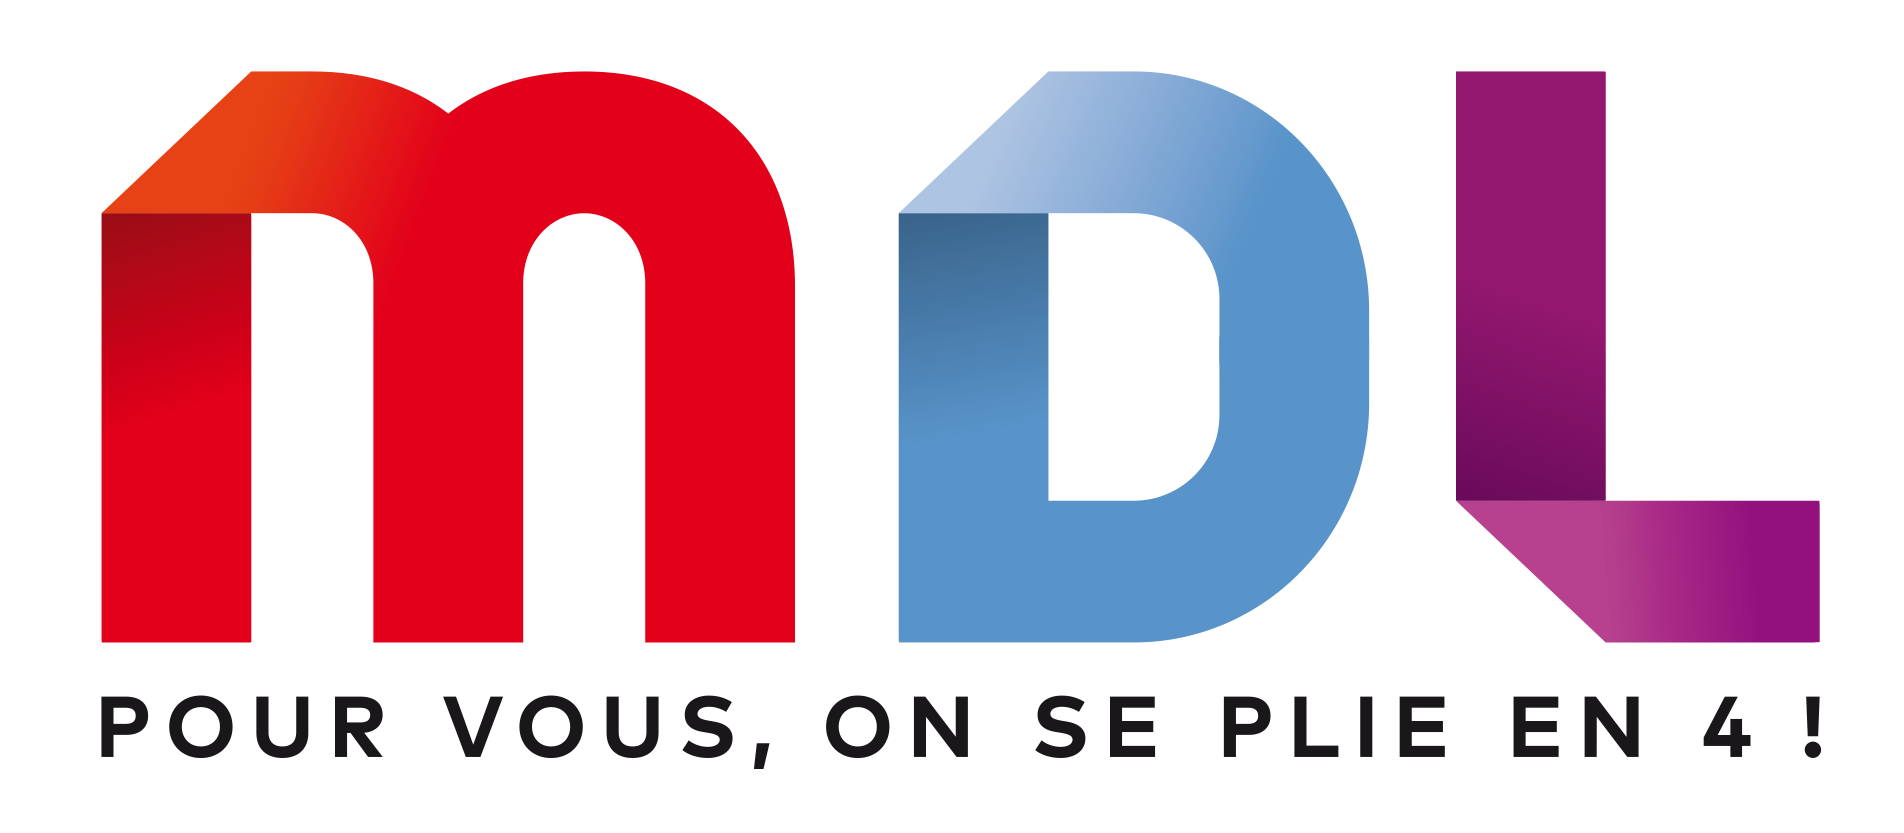 Logo MDL Nimes